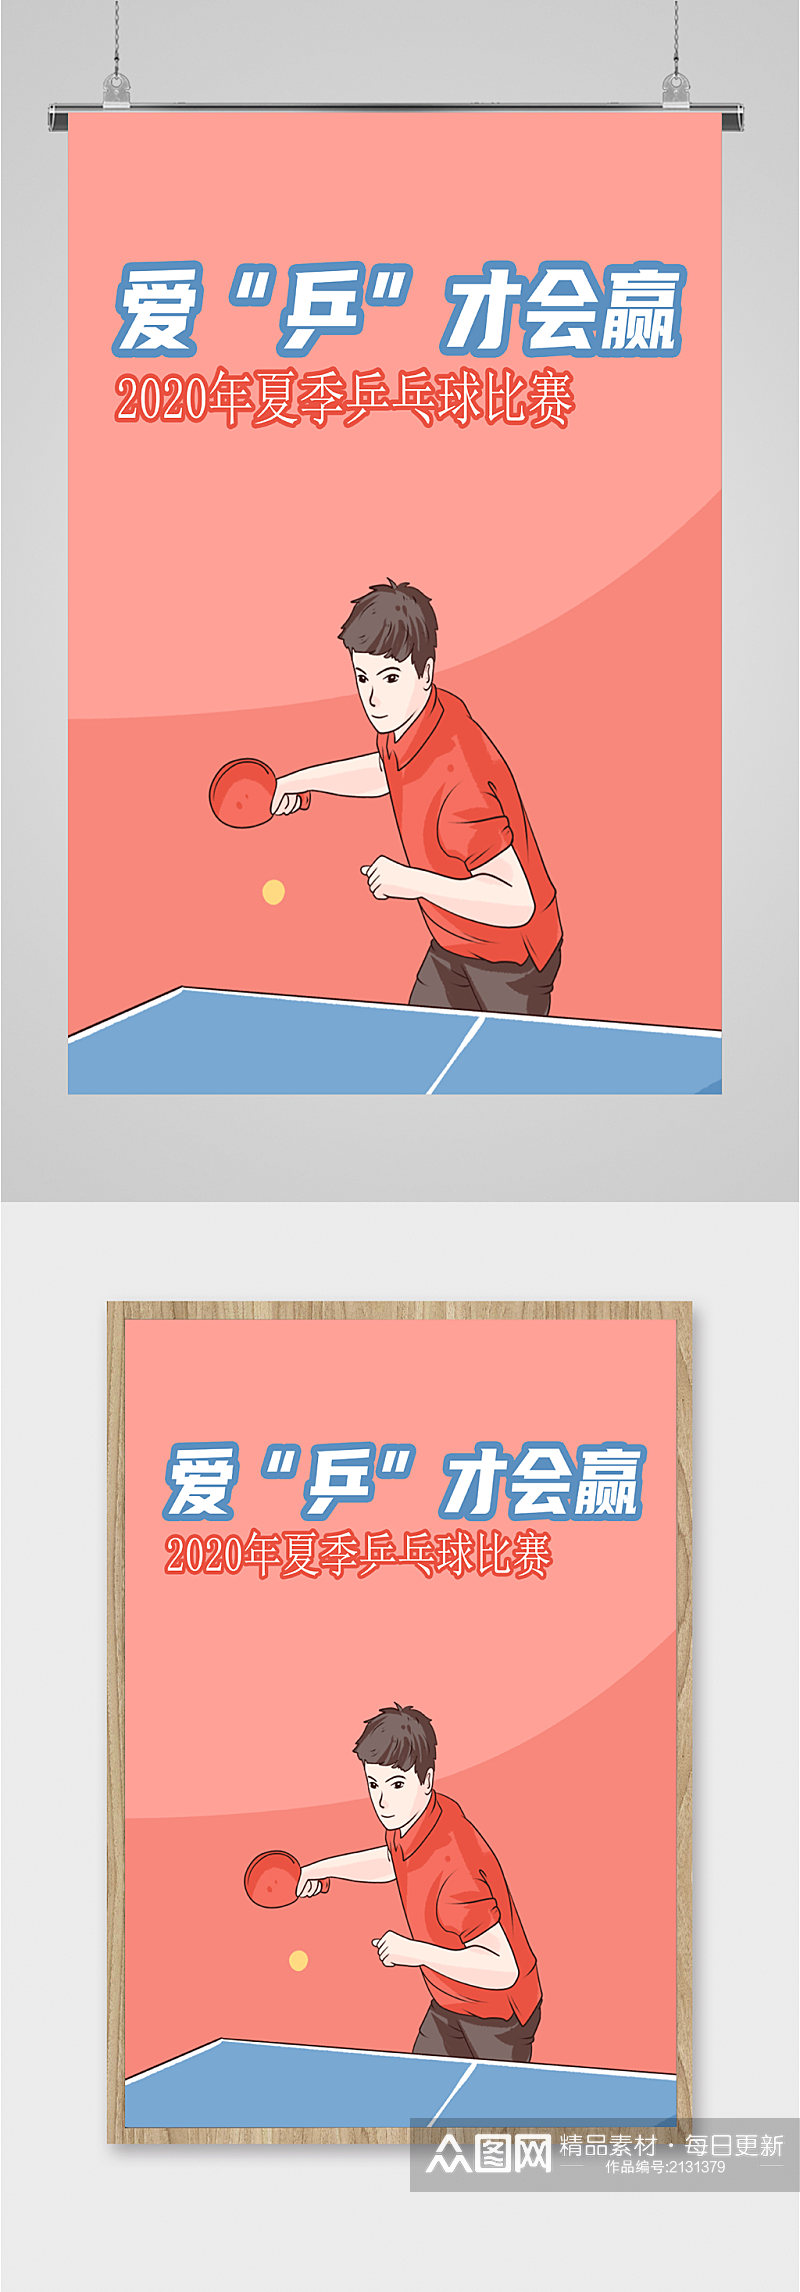 乒乓球夏季比赛海报素材